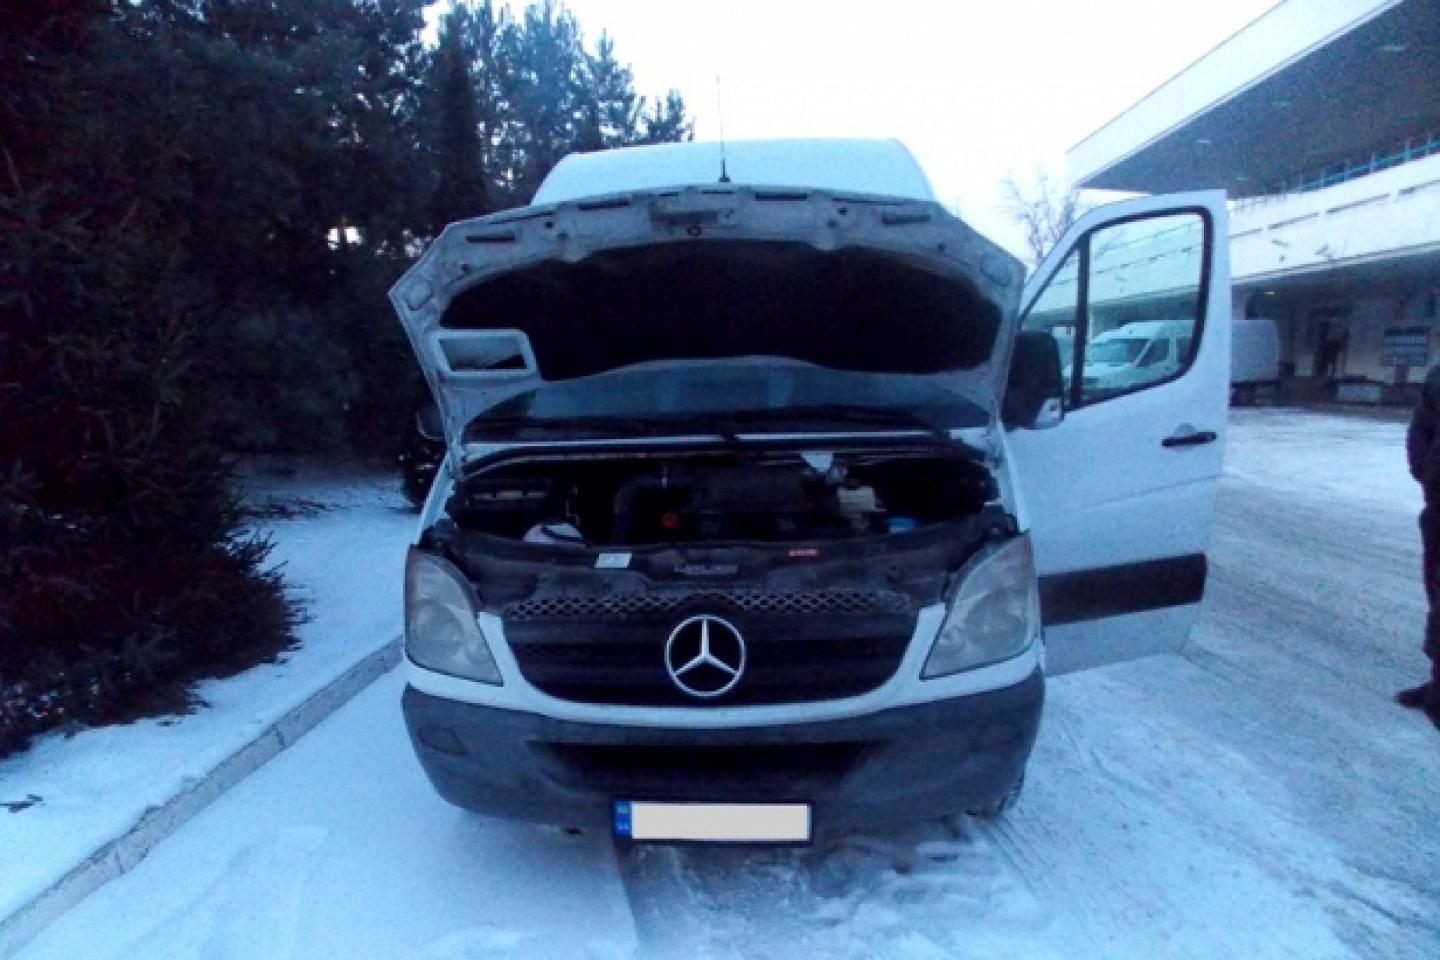 Сьогодні, 7 березня 2018 року, в зону митного контролю на ділянку «в`їзд в Україну» митного посту «Ужгород» Закарпатської митниці ДФС заїхав легковий автомобіль марки «Mercedes-Benz», 2011 р.в.